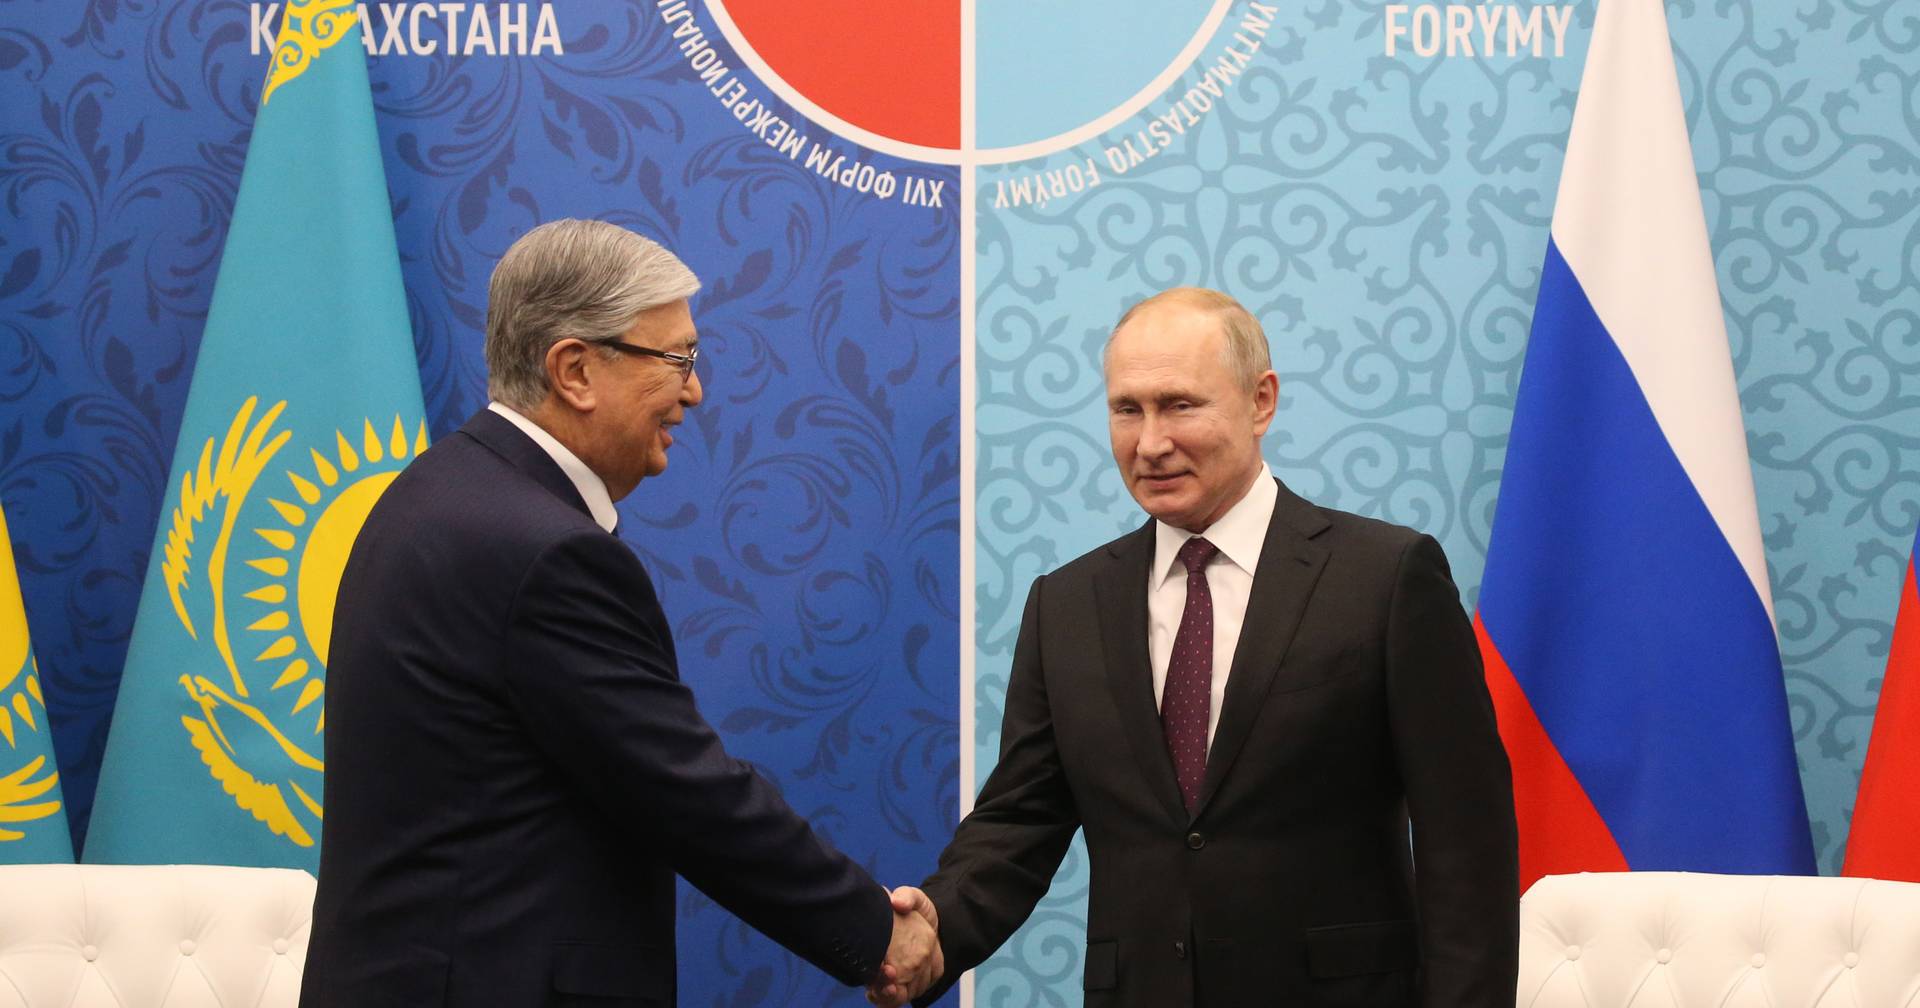 Cazaquistão mostra-se “frio” com Moscovo, mas serão as consequências da neutralidade demasiado pesadas a longo prazo?